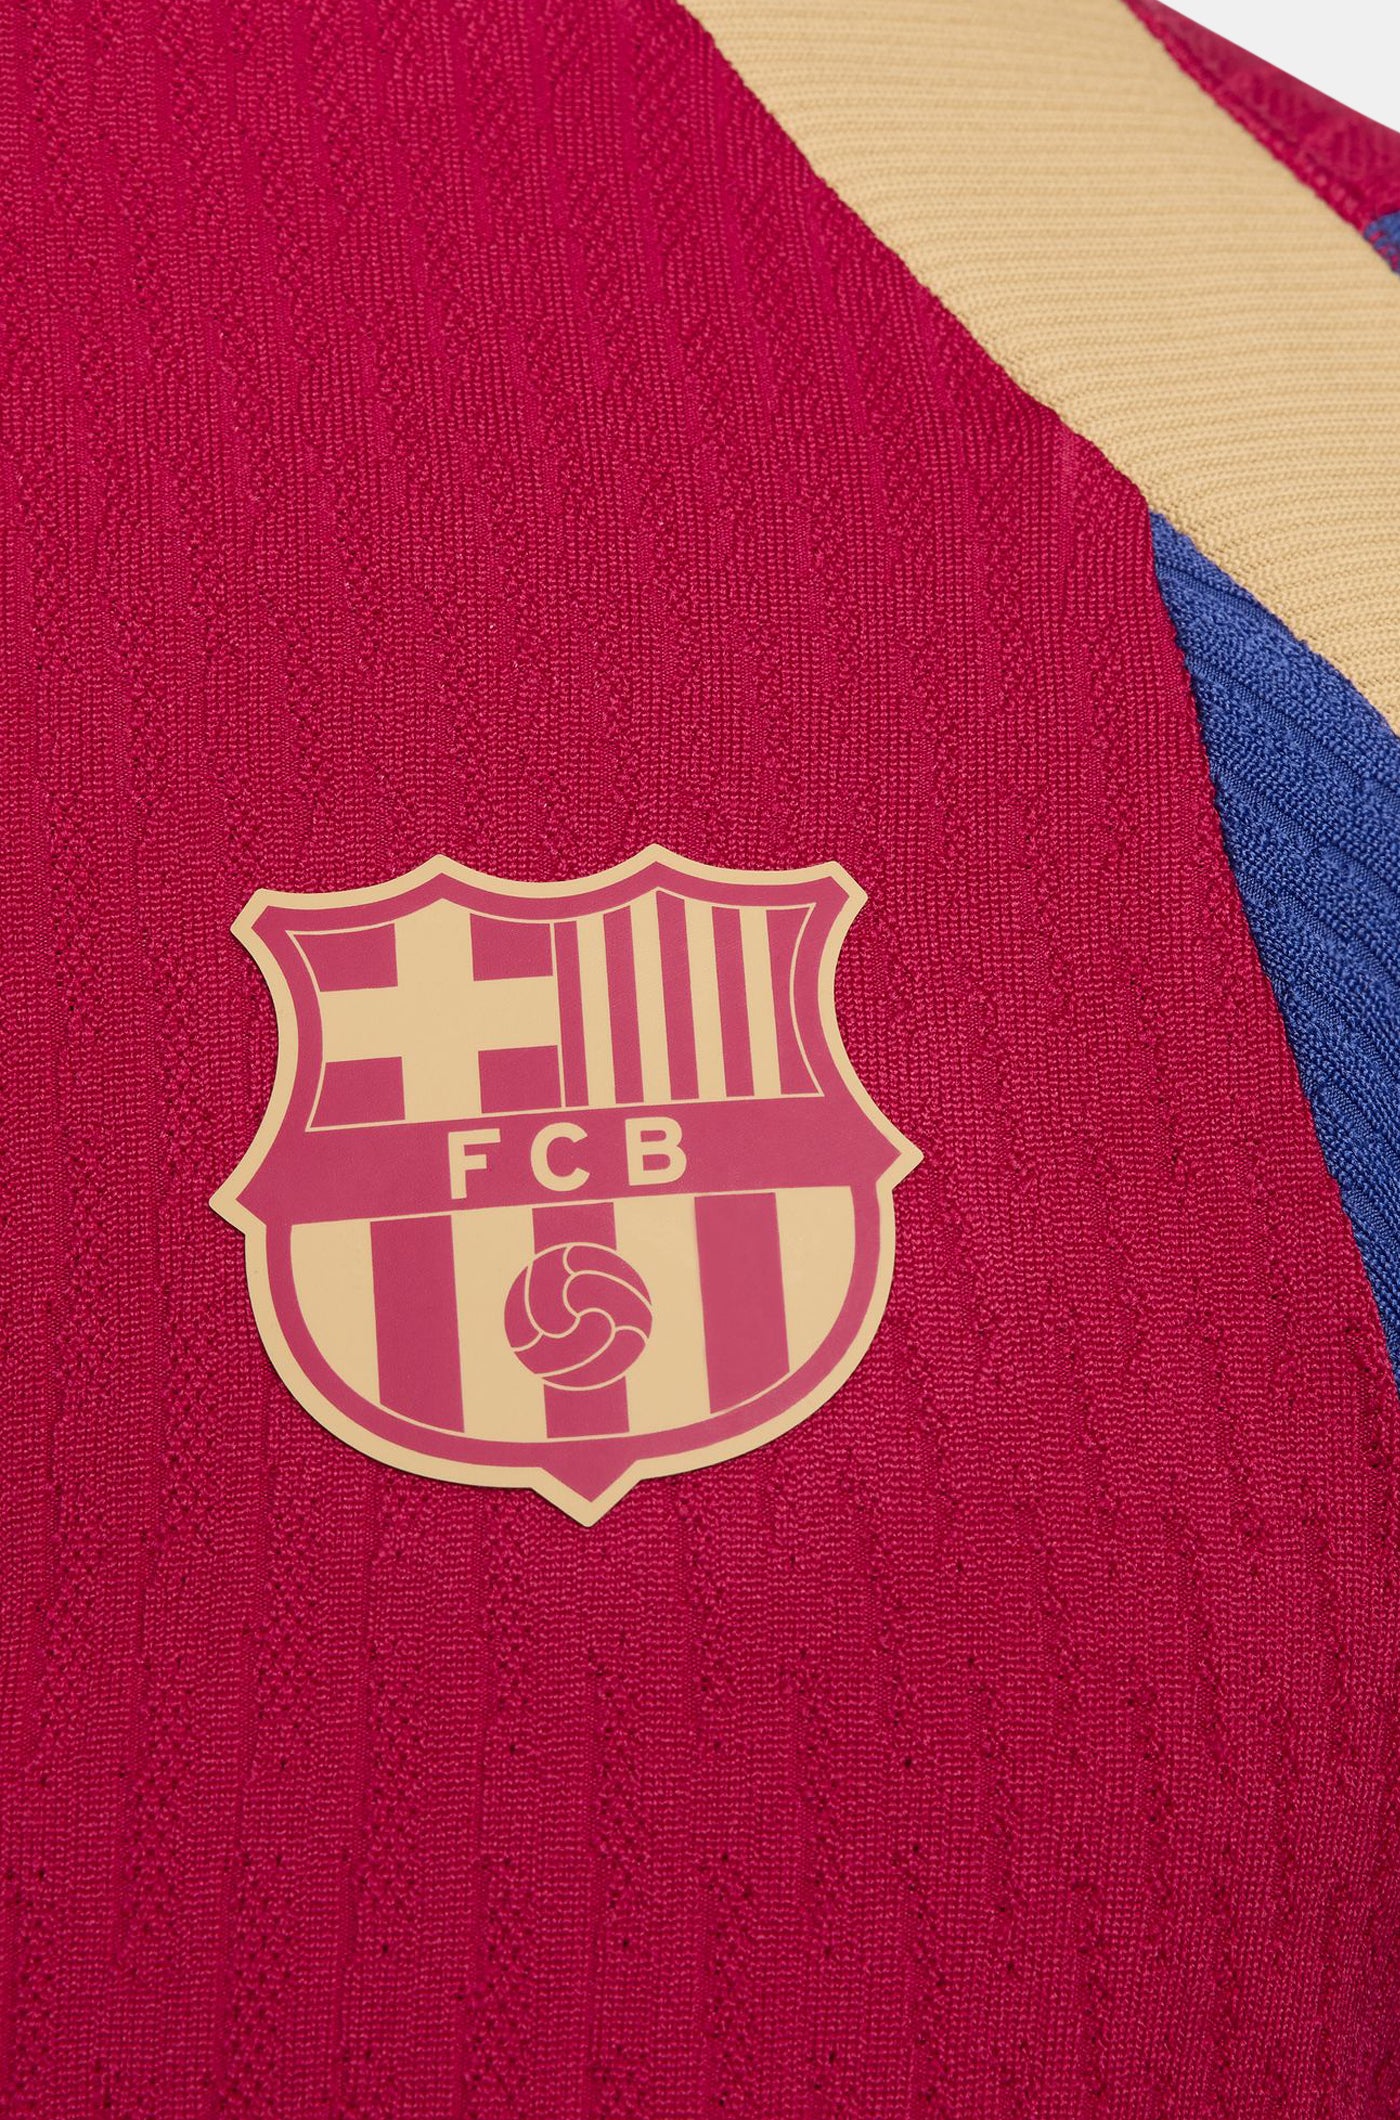 Dessuadora grana d'entrenament del FC Barcelona 23/24 - Edició Jugador